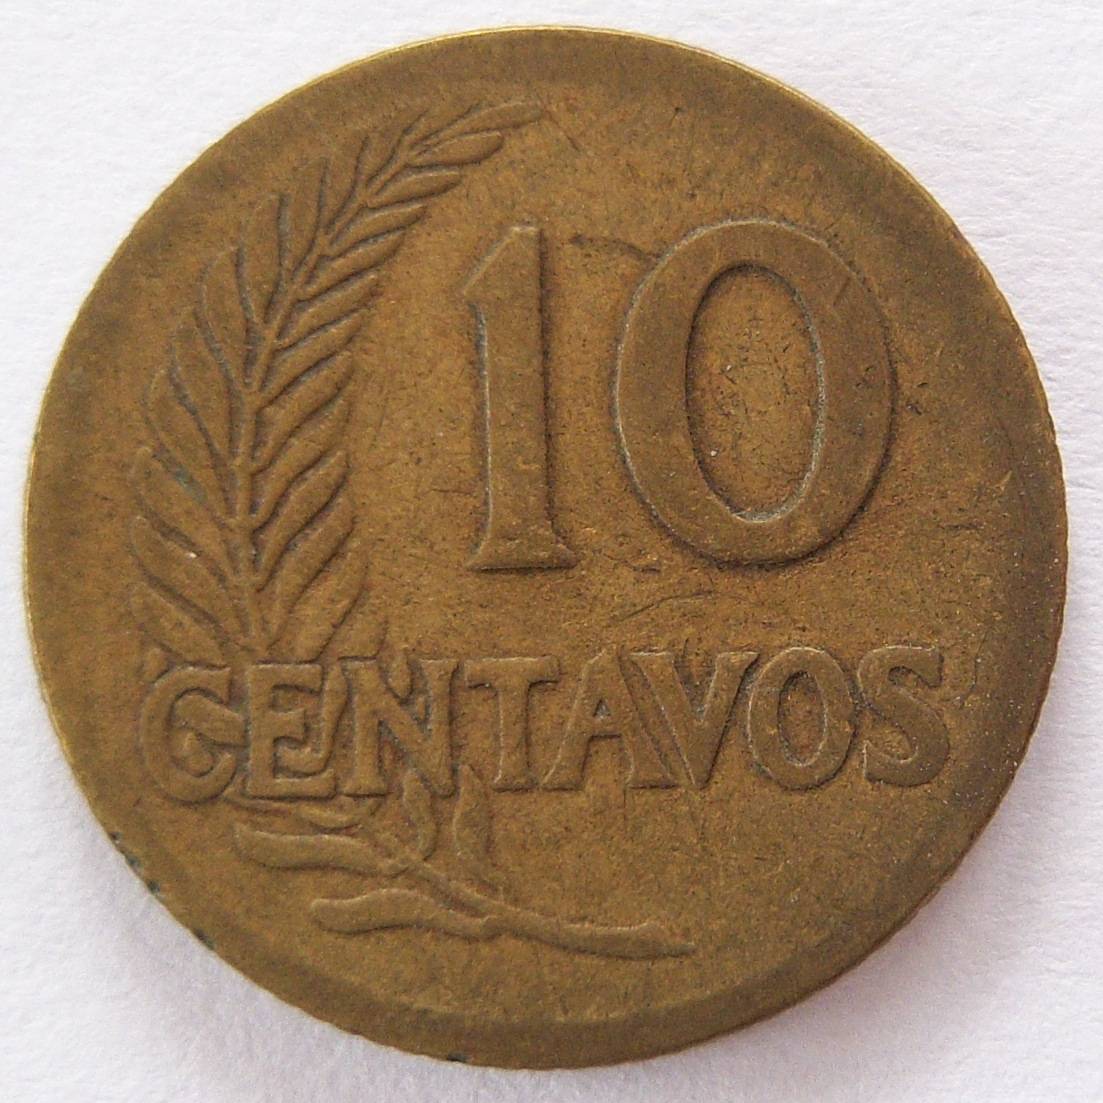  Peru 10 Centavos 1942   